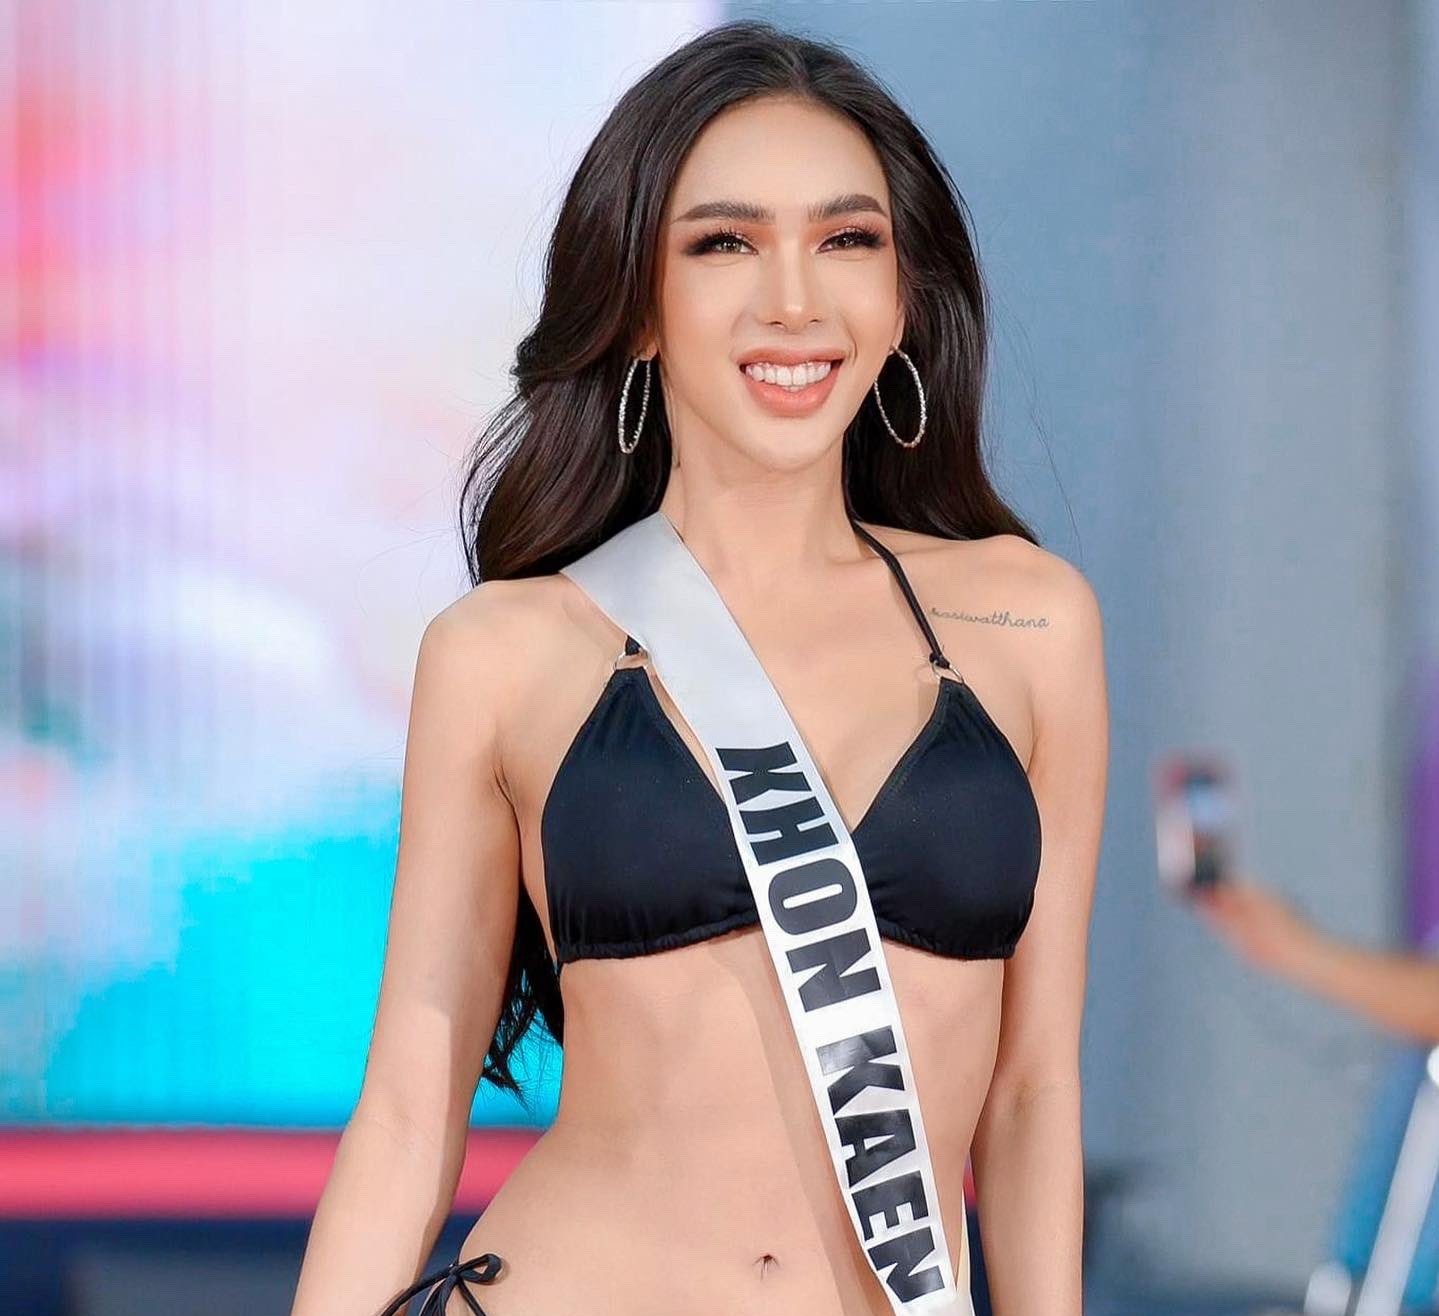 ครูแพรว แพรวไพลิน คว้า miss trans thailand 2022  หนุนเมืองไทยเปิดรับ sex creator ตอบคำถาม miss trans thailand คืออะไร